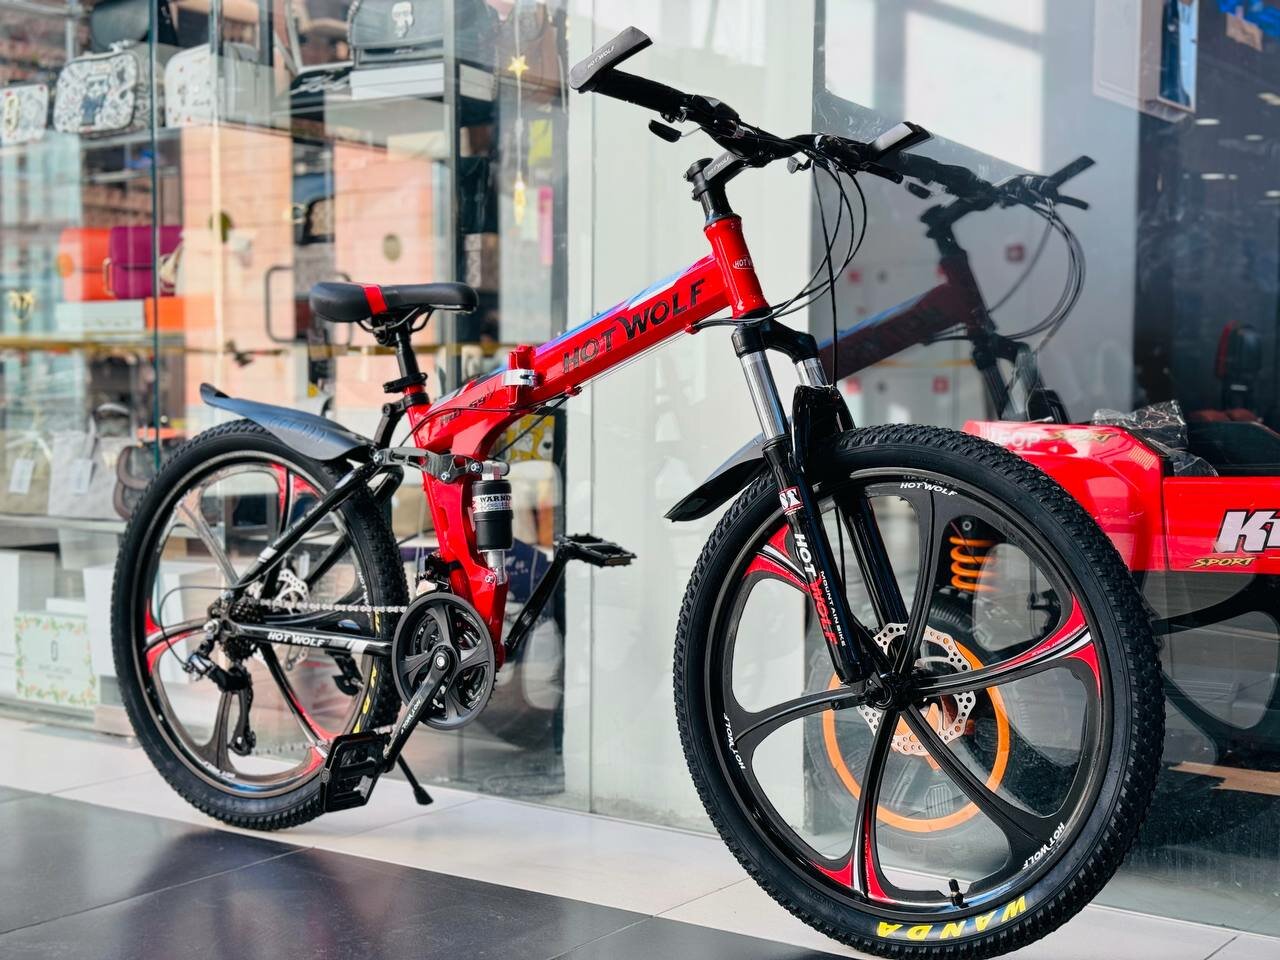 Горный велосипед складной HOT WOLF 597, 24 дюймов / подростковый, мужской и женский для прогулки / скоростной, спортивный велик красный